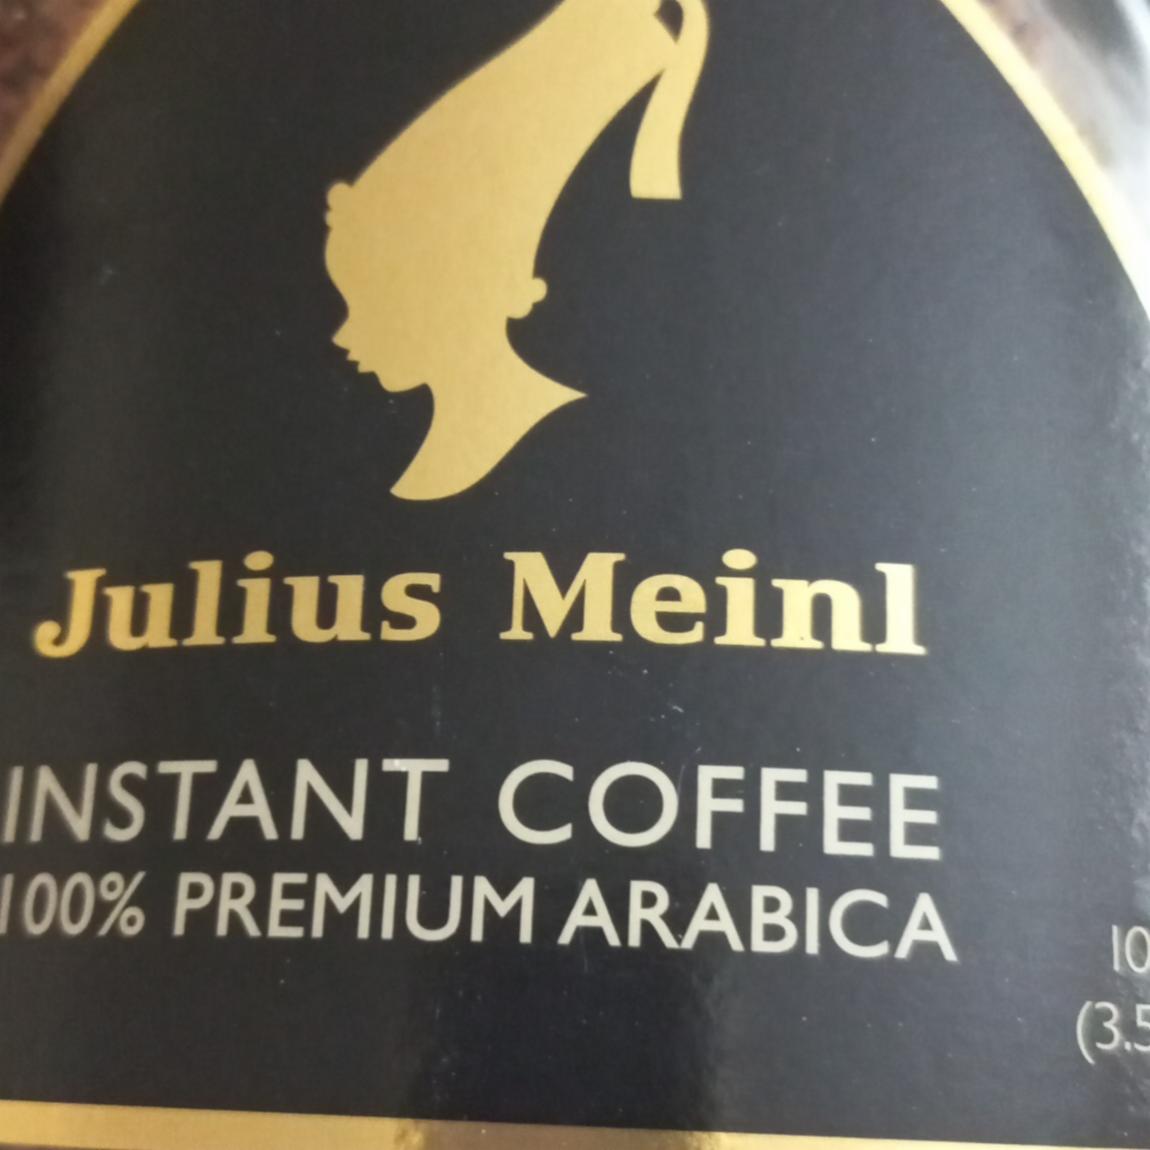 Fotografie - Instant Coffee 100% Premium Arabica Julius Meinl